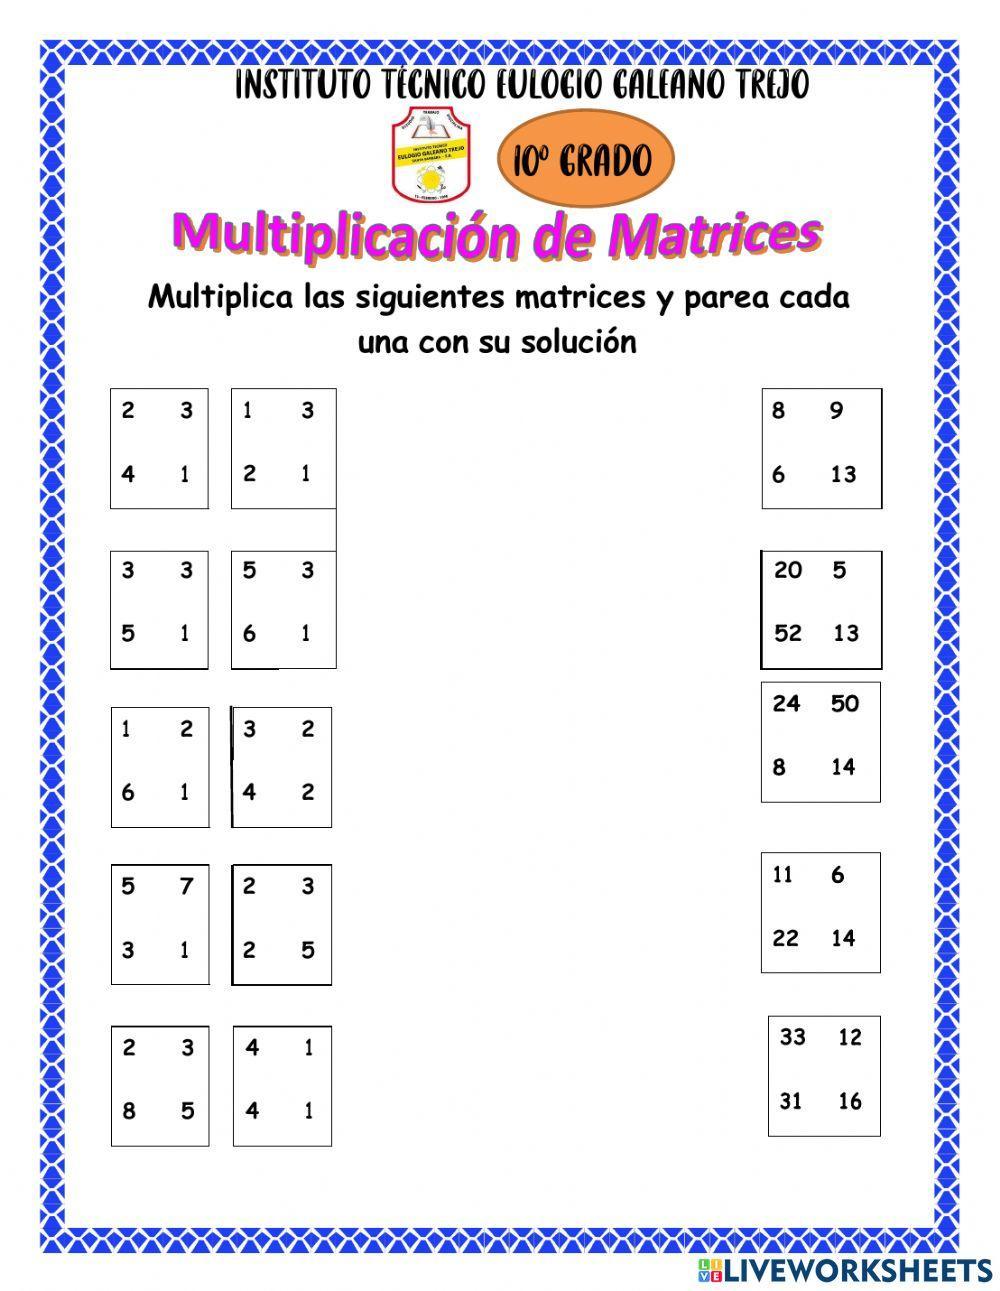 Multiplicación de matrices